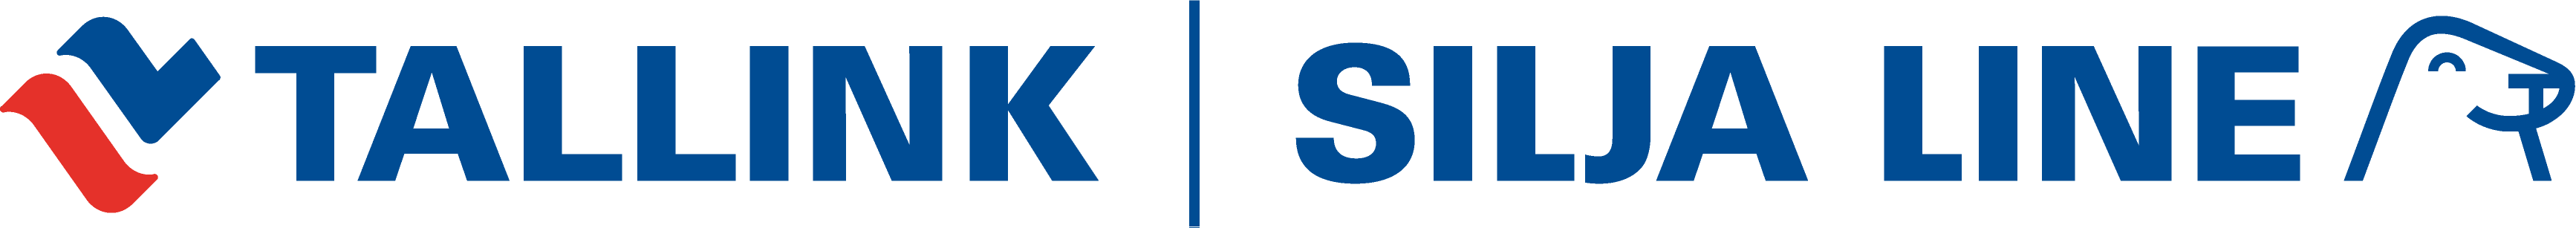 Tallink Silja logotips